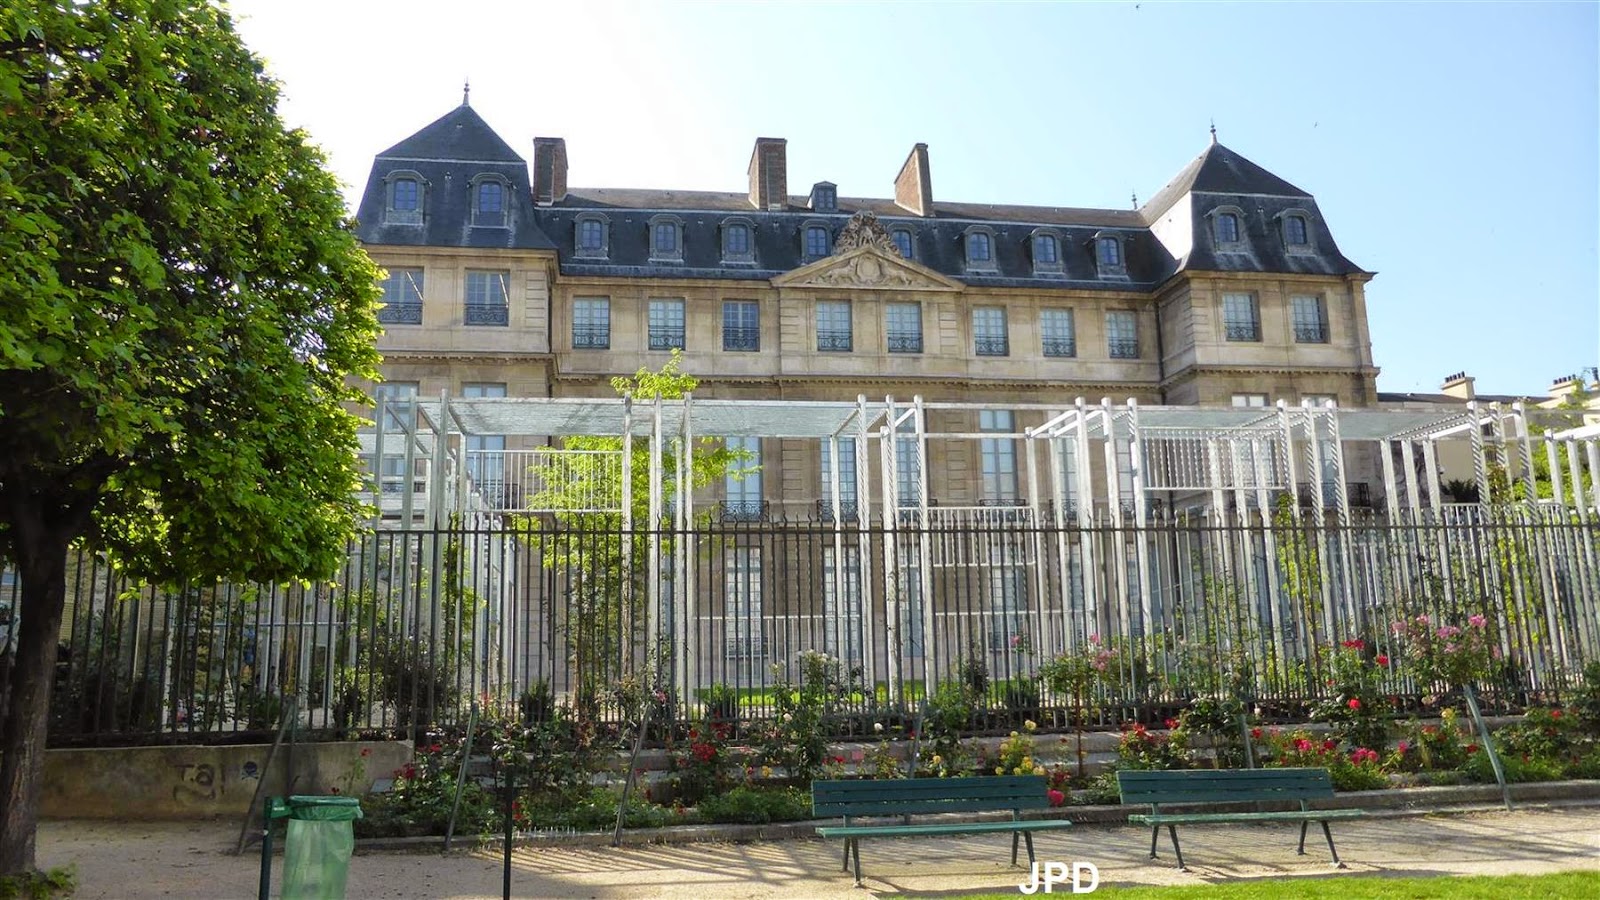 Paris-bise-art : La pergola de l'hôtel Salé - Musée Picasso